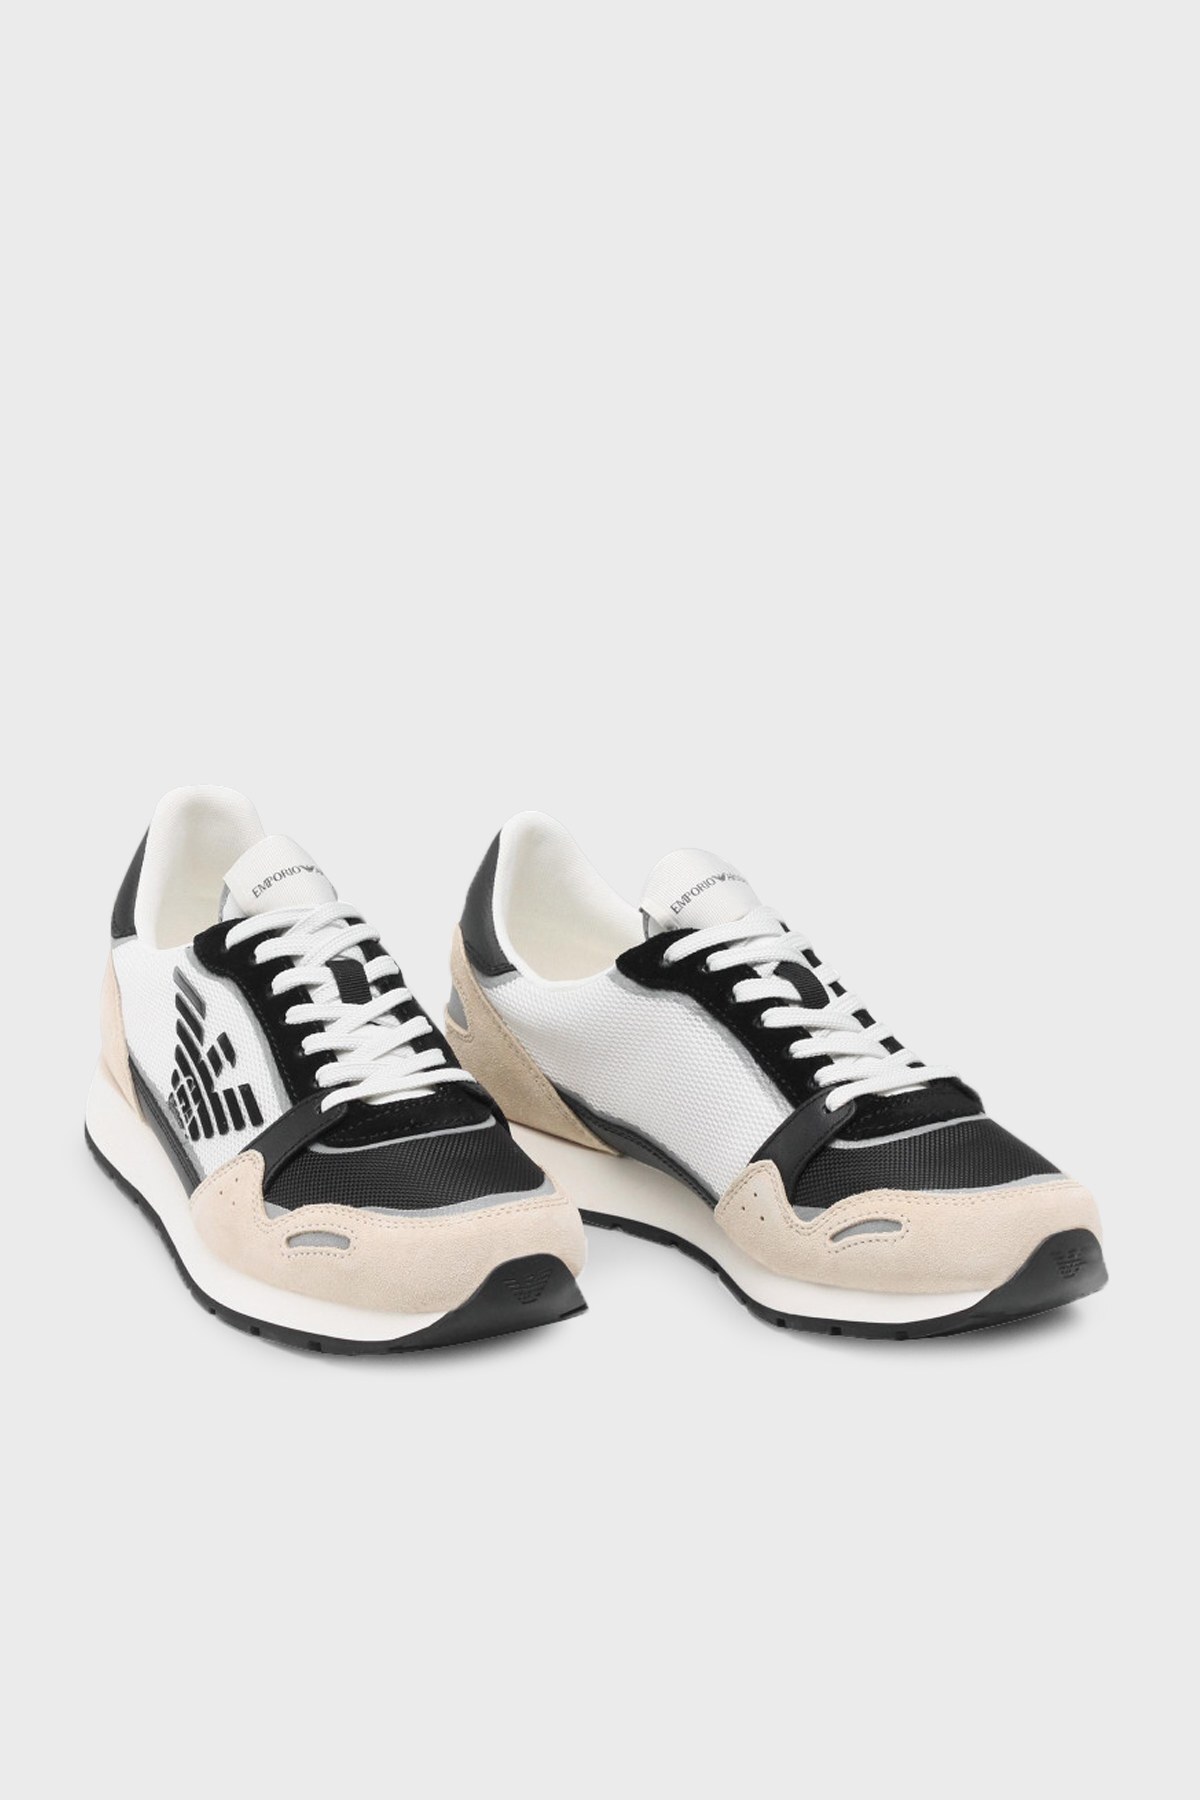 Emporio Armani Logolu Bağcıklı Hakiki Deri Sneaker Erkek Ayakkabı X4X537 XM678 Q826 BEJ-SİYAH